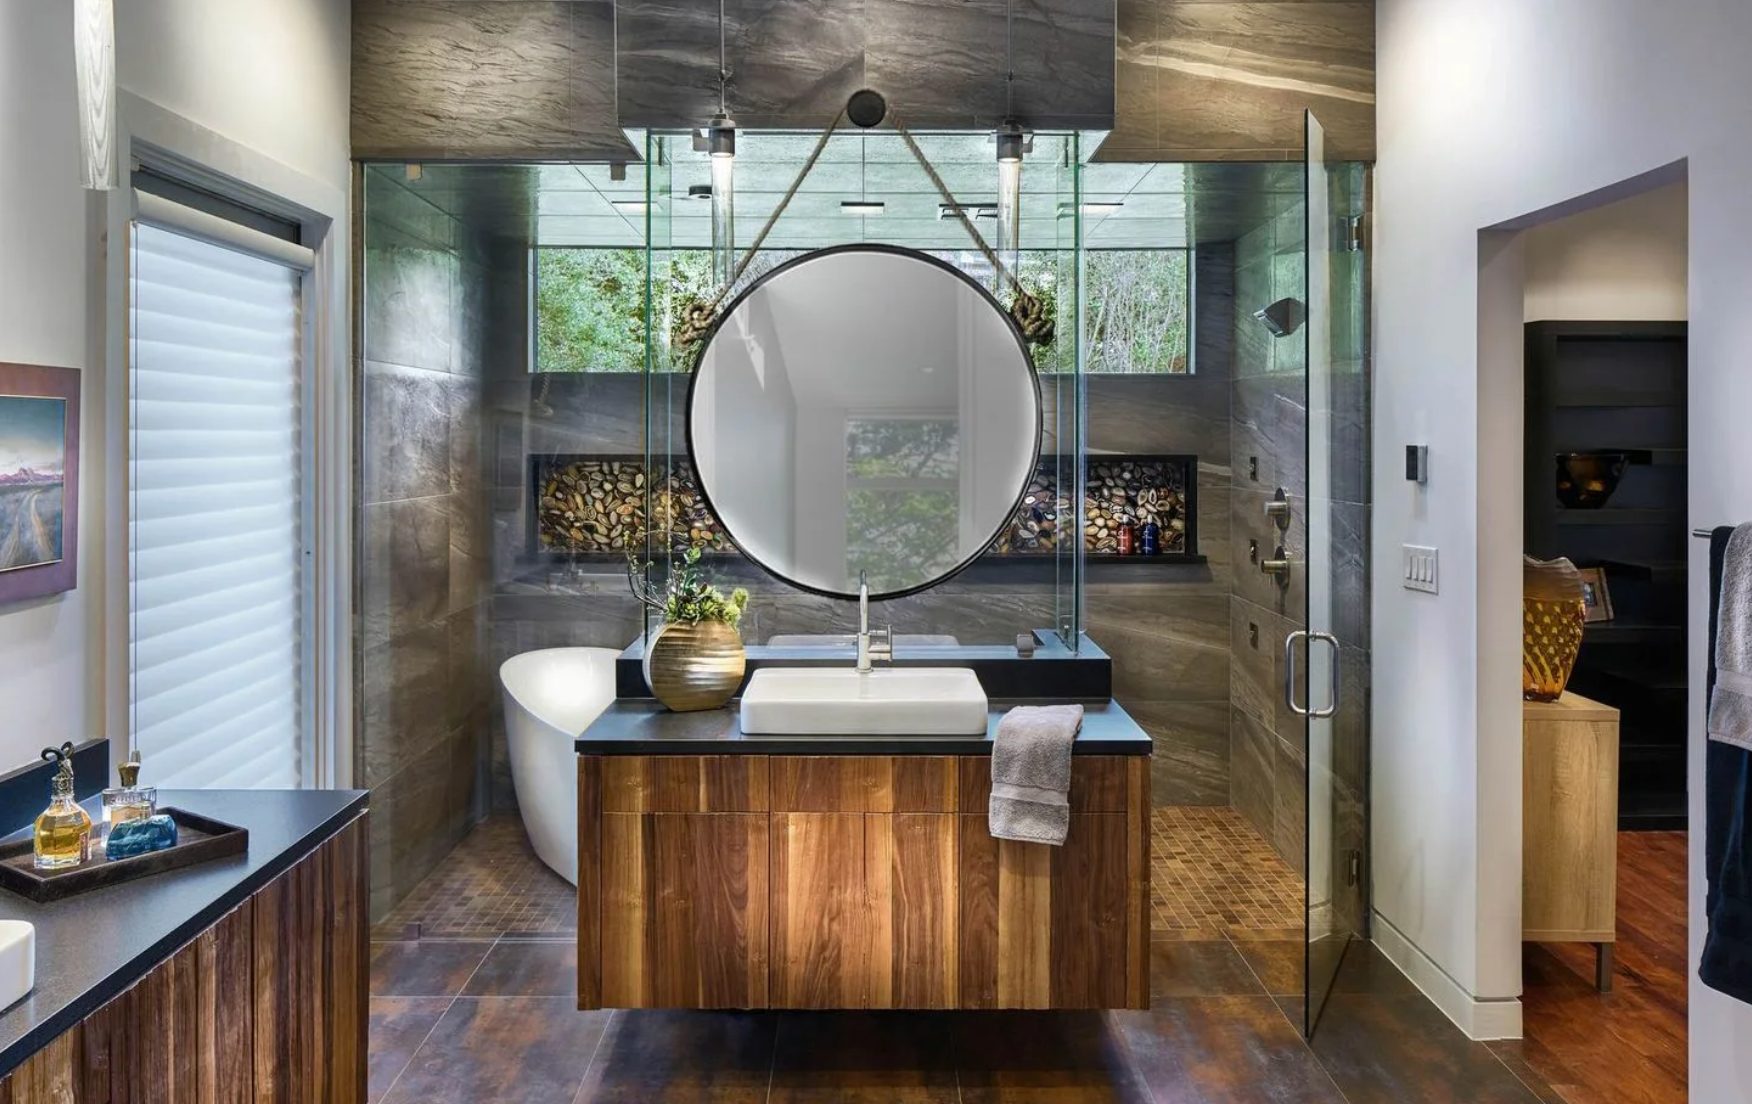 Bathroom cabinet, Plumbing fixture, Mirror, Sink, Cabinetry, Building, Table, Tap, Countertop, Wood